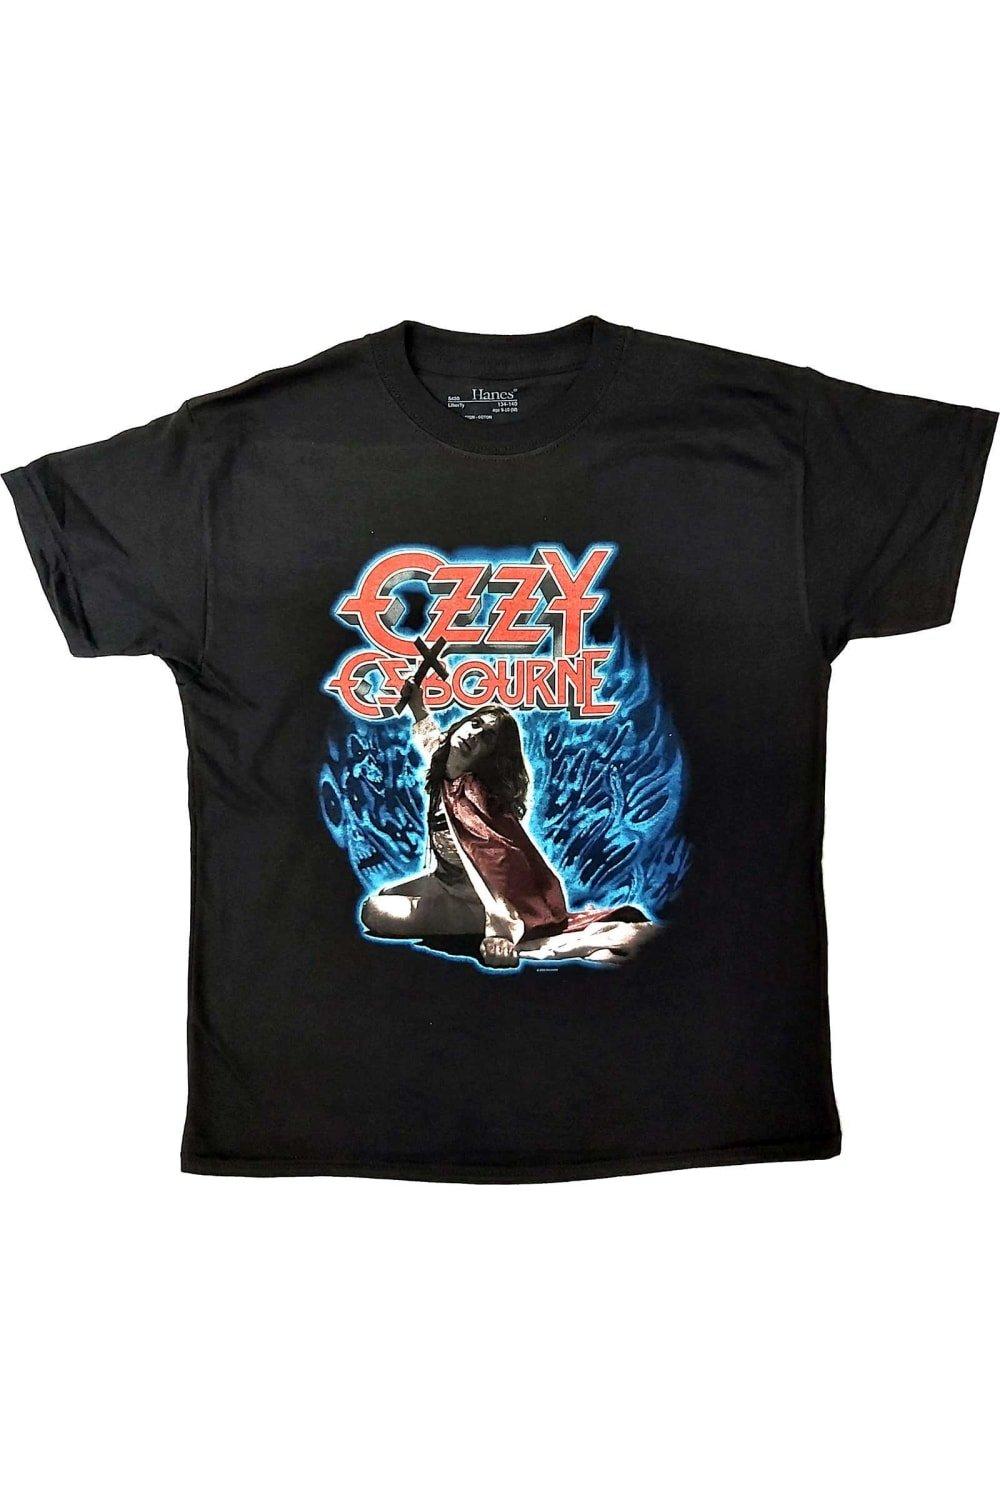 Хлопковая футболка Blizzard Of Ozz Ozzy Osbourne, черный osbourne ozzy blizzard of ozz original recording remastered lp спрей для очистки lp с микрофиброй 250мл набор